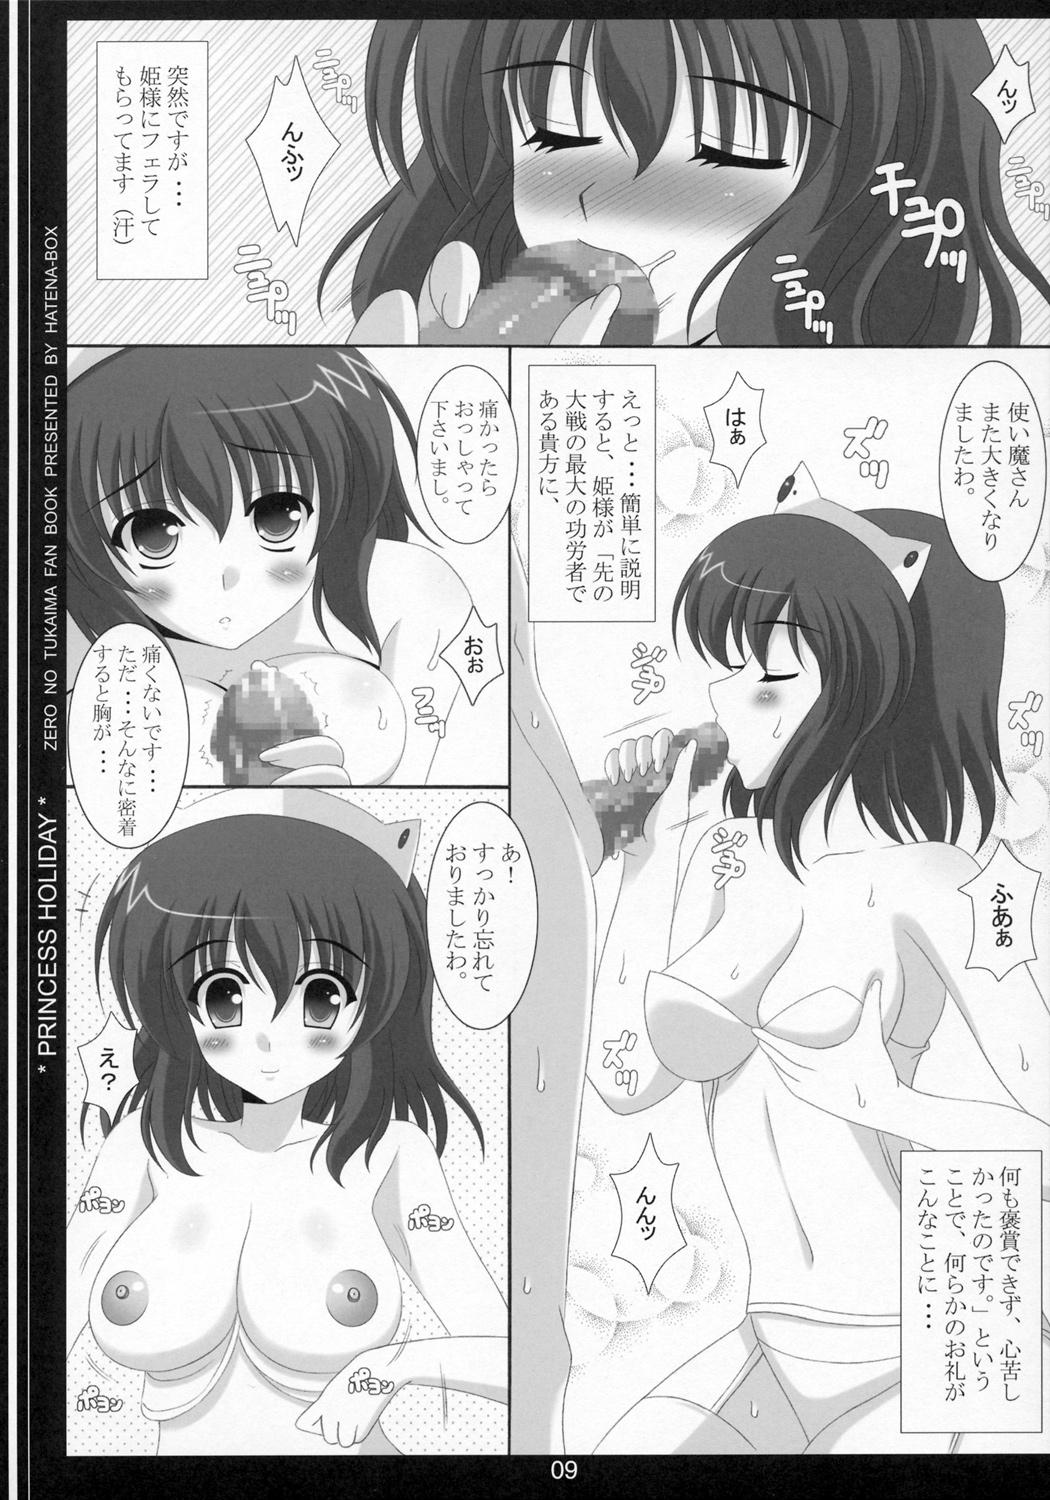 Lesbians Nuidara sugoin desu. - Zero no tsukaima Amante - Page 8